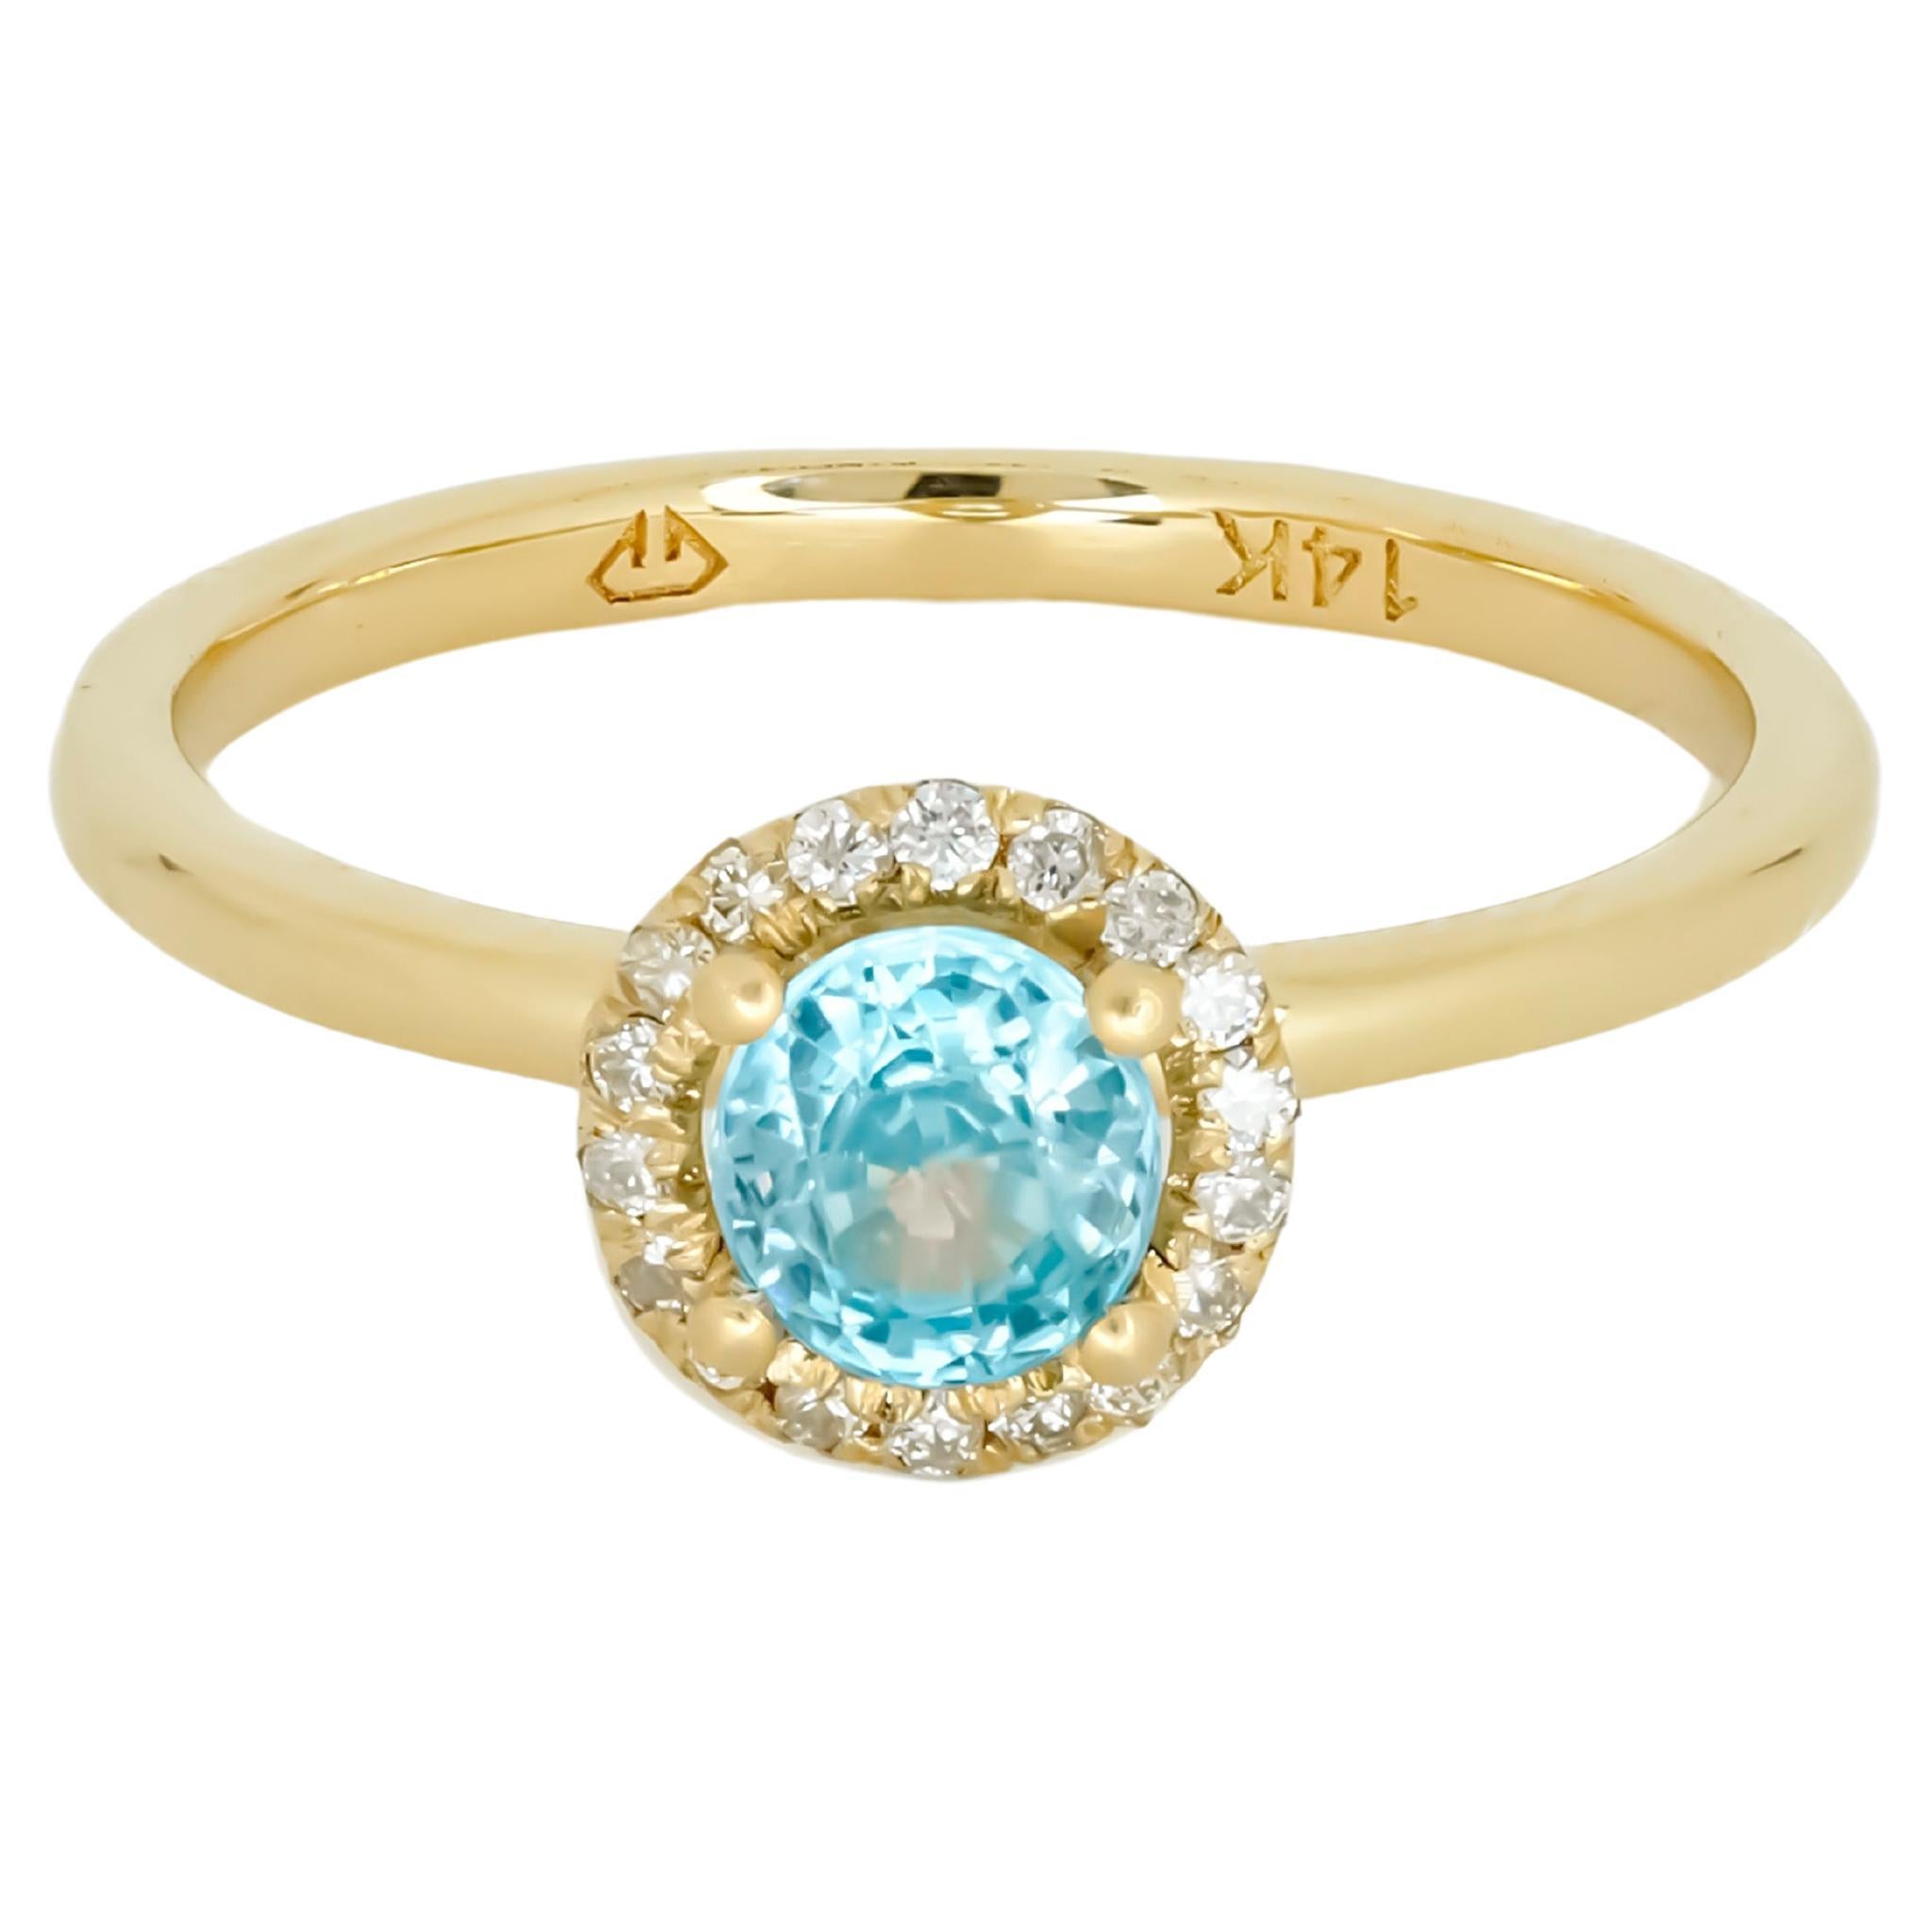 Topaz Ring with Diamonds in 14 Karat Gold, Sky Blue Topaz 14k Gold Ring